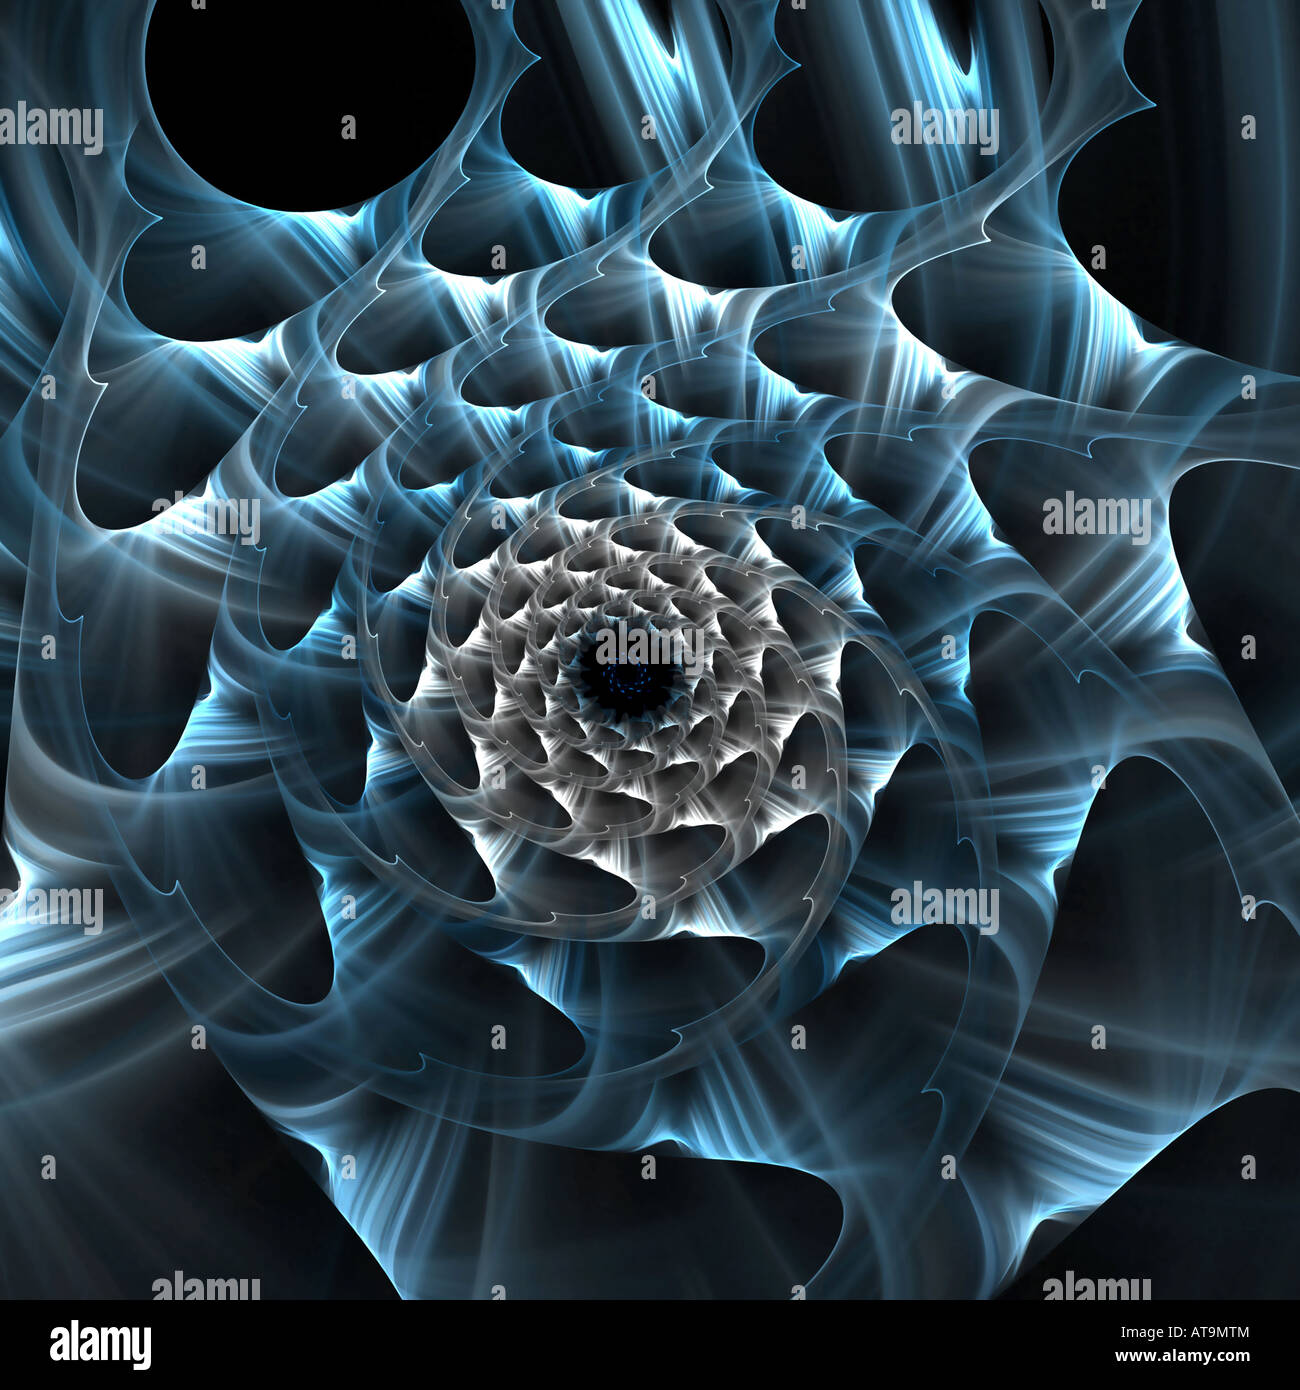 Résumé de l'image fractale qui ressemble à une spirale de site web Banque D'Images